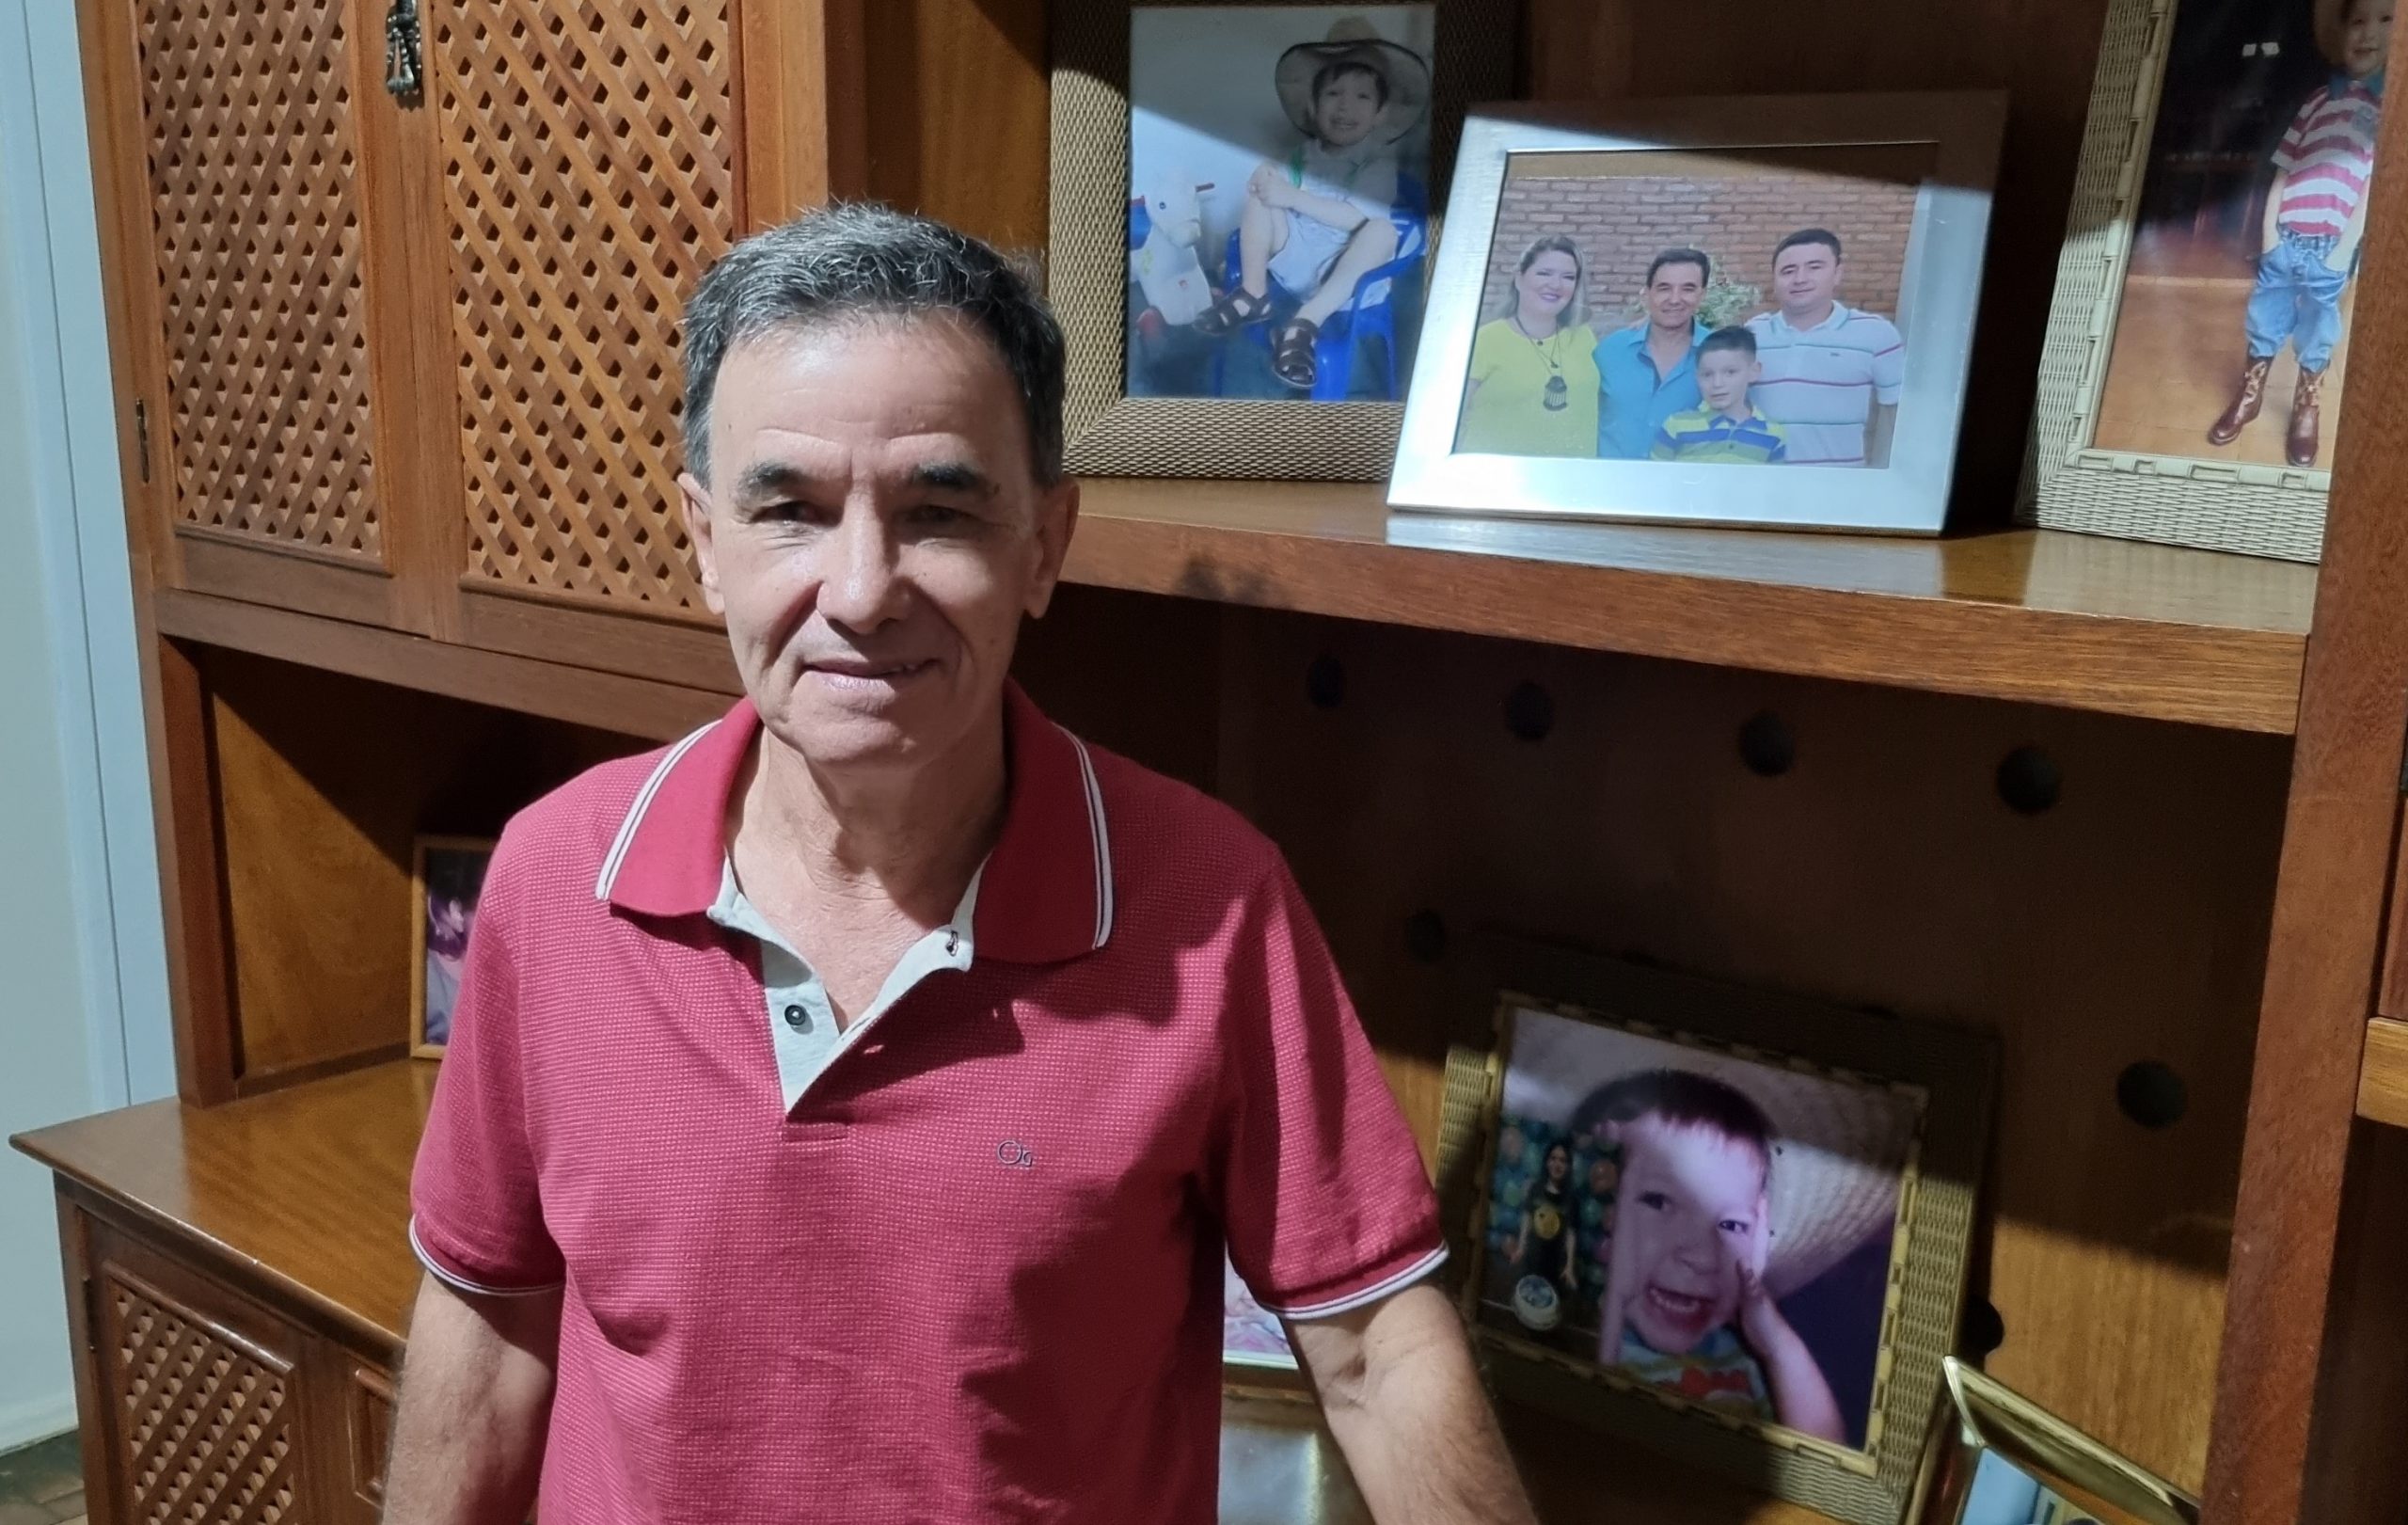 ‘São mais de 45 anos atuando como dentista em Mirandópolis, tenho muito orgulho da minha trajetória’, ressalta Zé Cesar